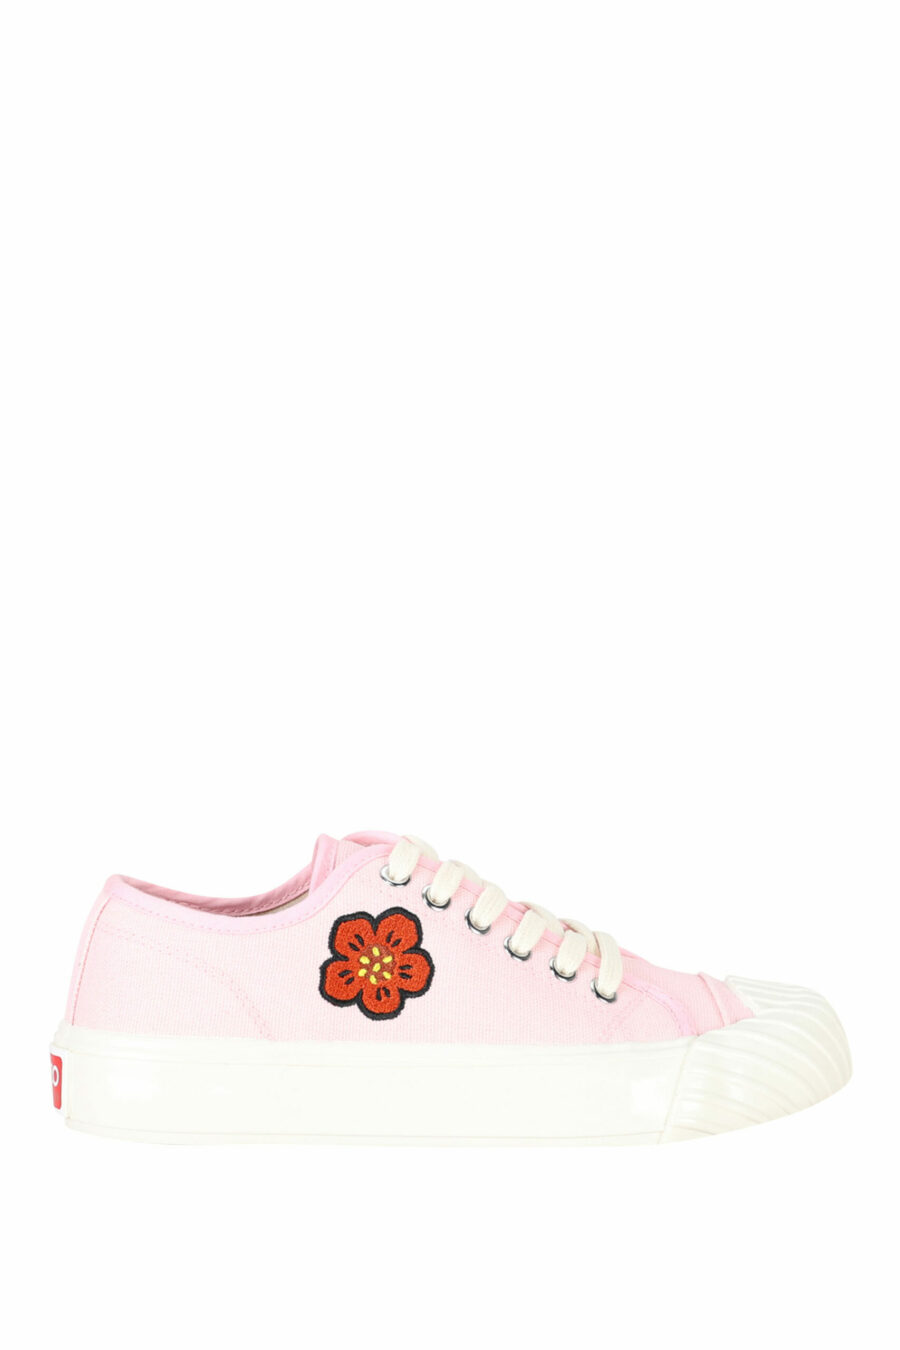 Zapatillas rosa "kenzo school" con logo "boke flower" - 3612230484559 scaled